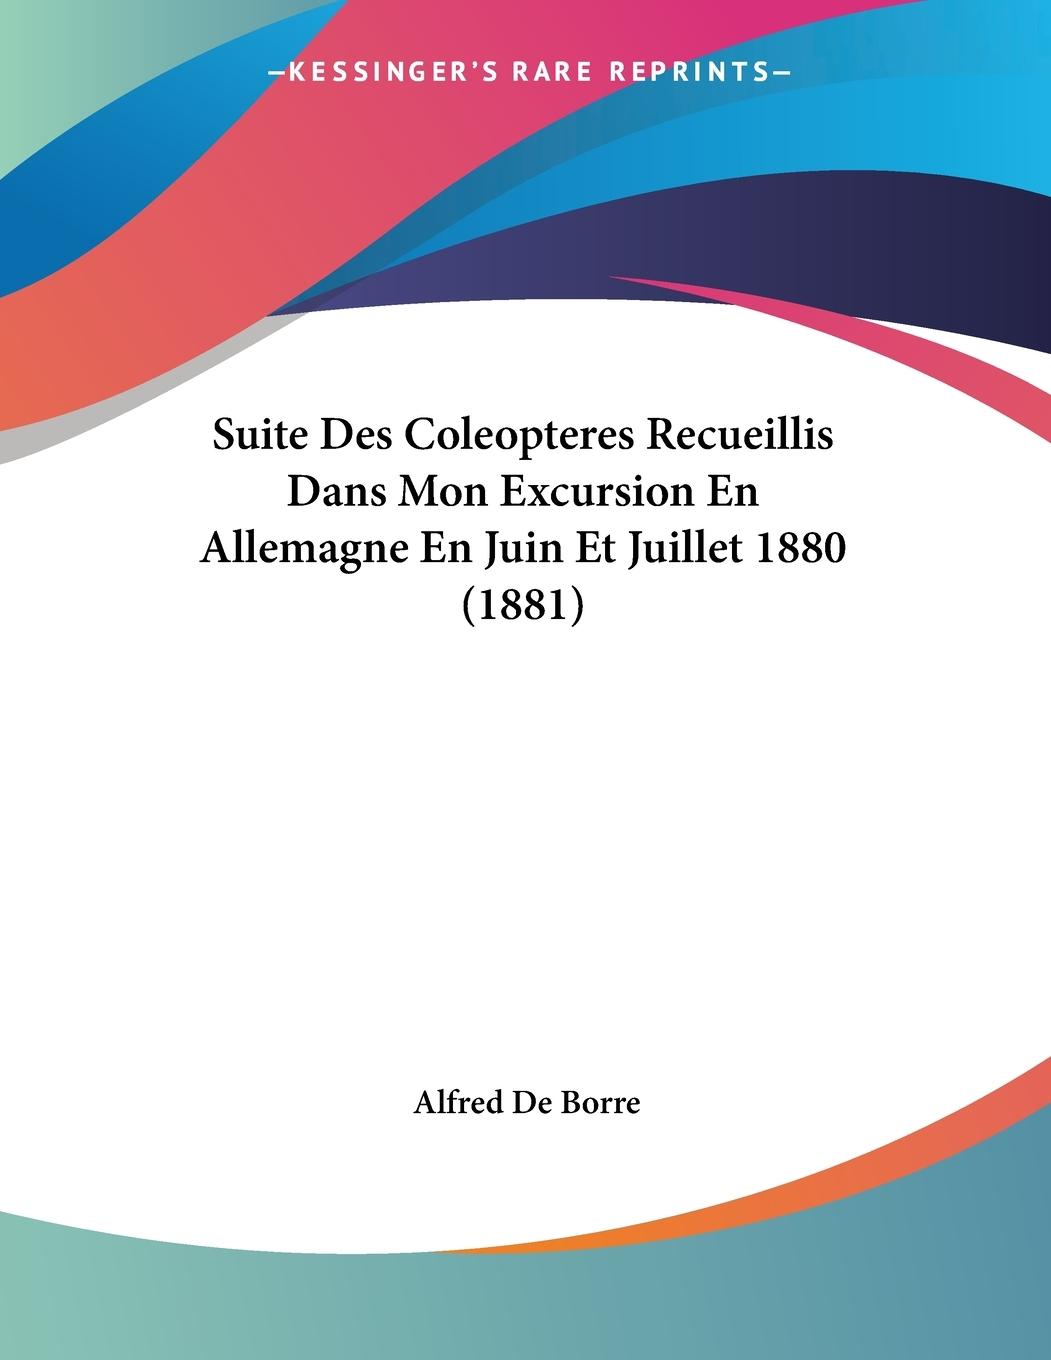 Suite Des Coleopteres Recueillis Dans Mon Excursion En Allemagne En Juin Et Juillet 1880 (1881) - De Borre, Alfred